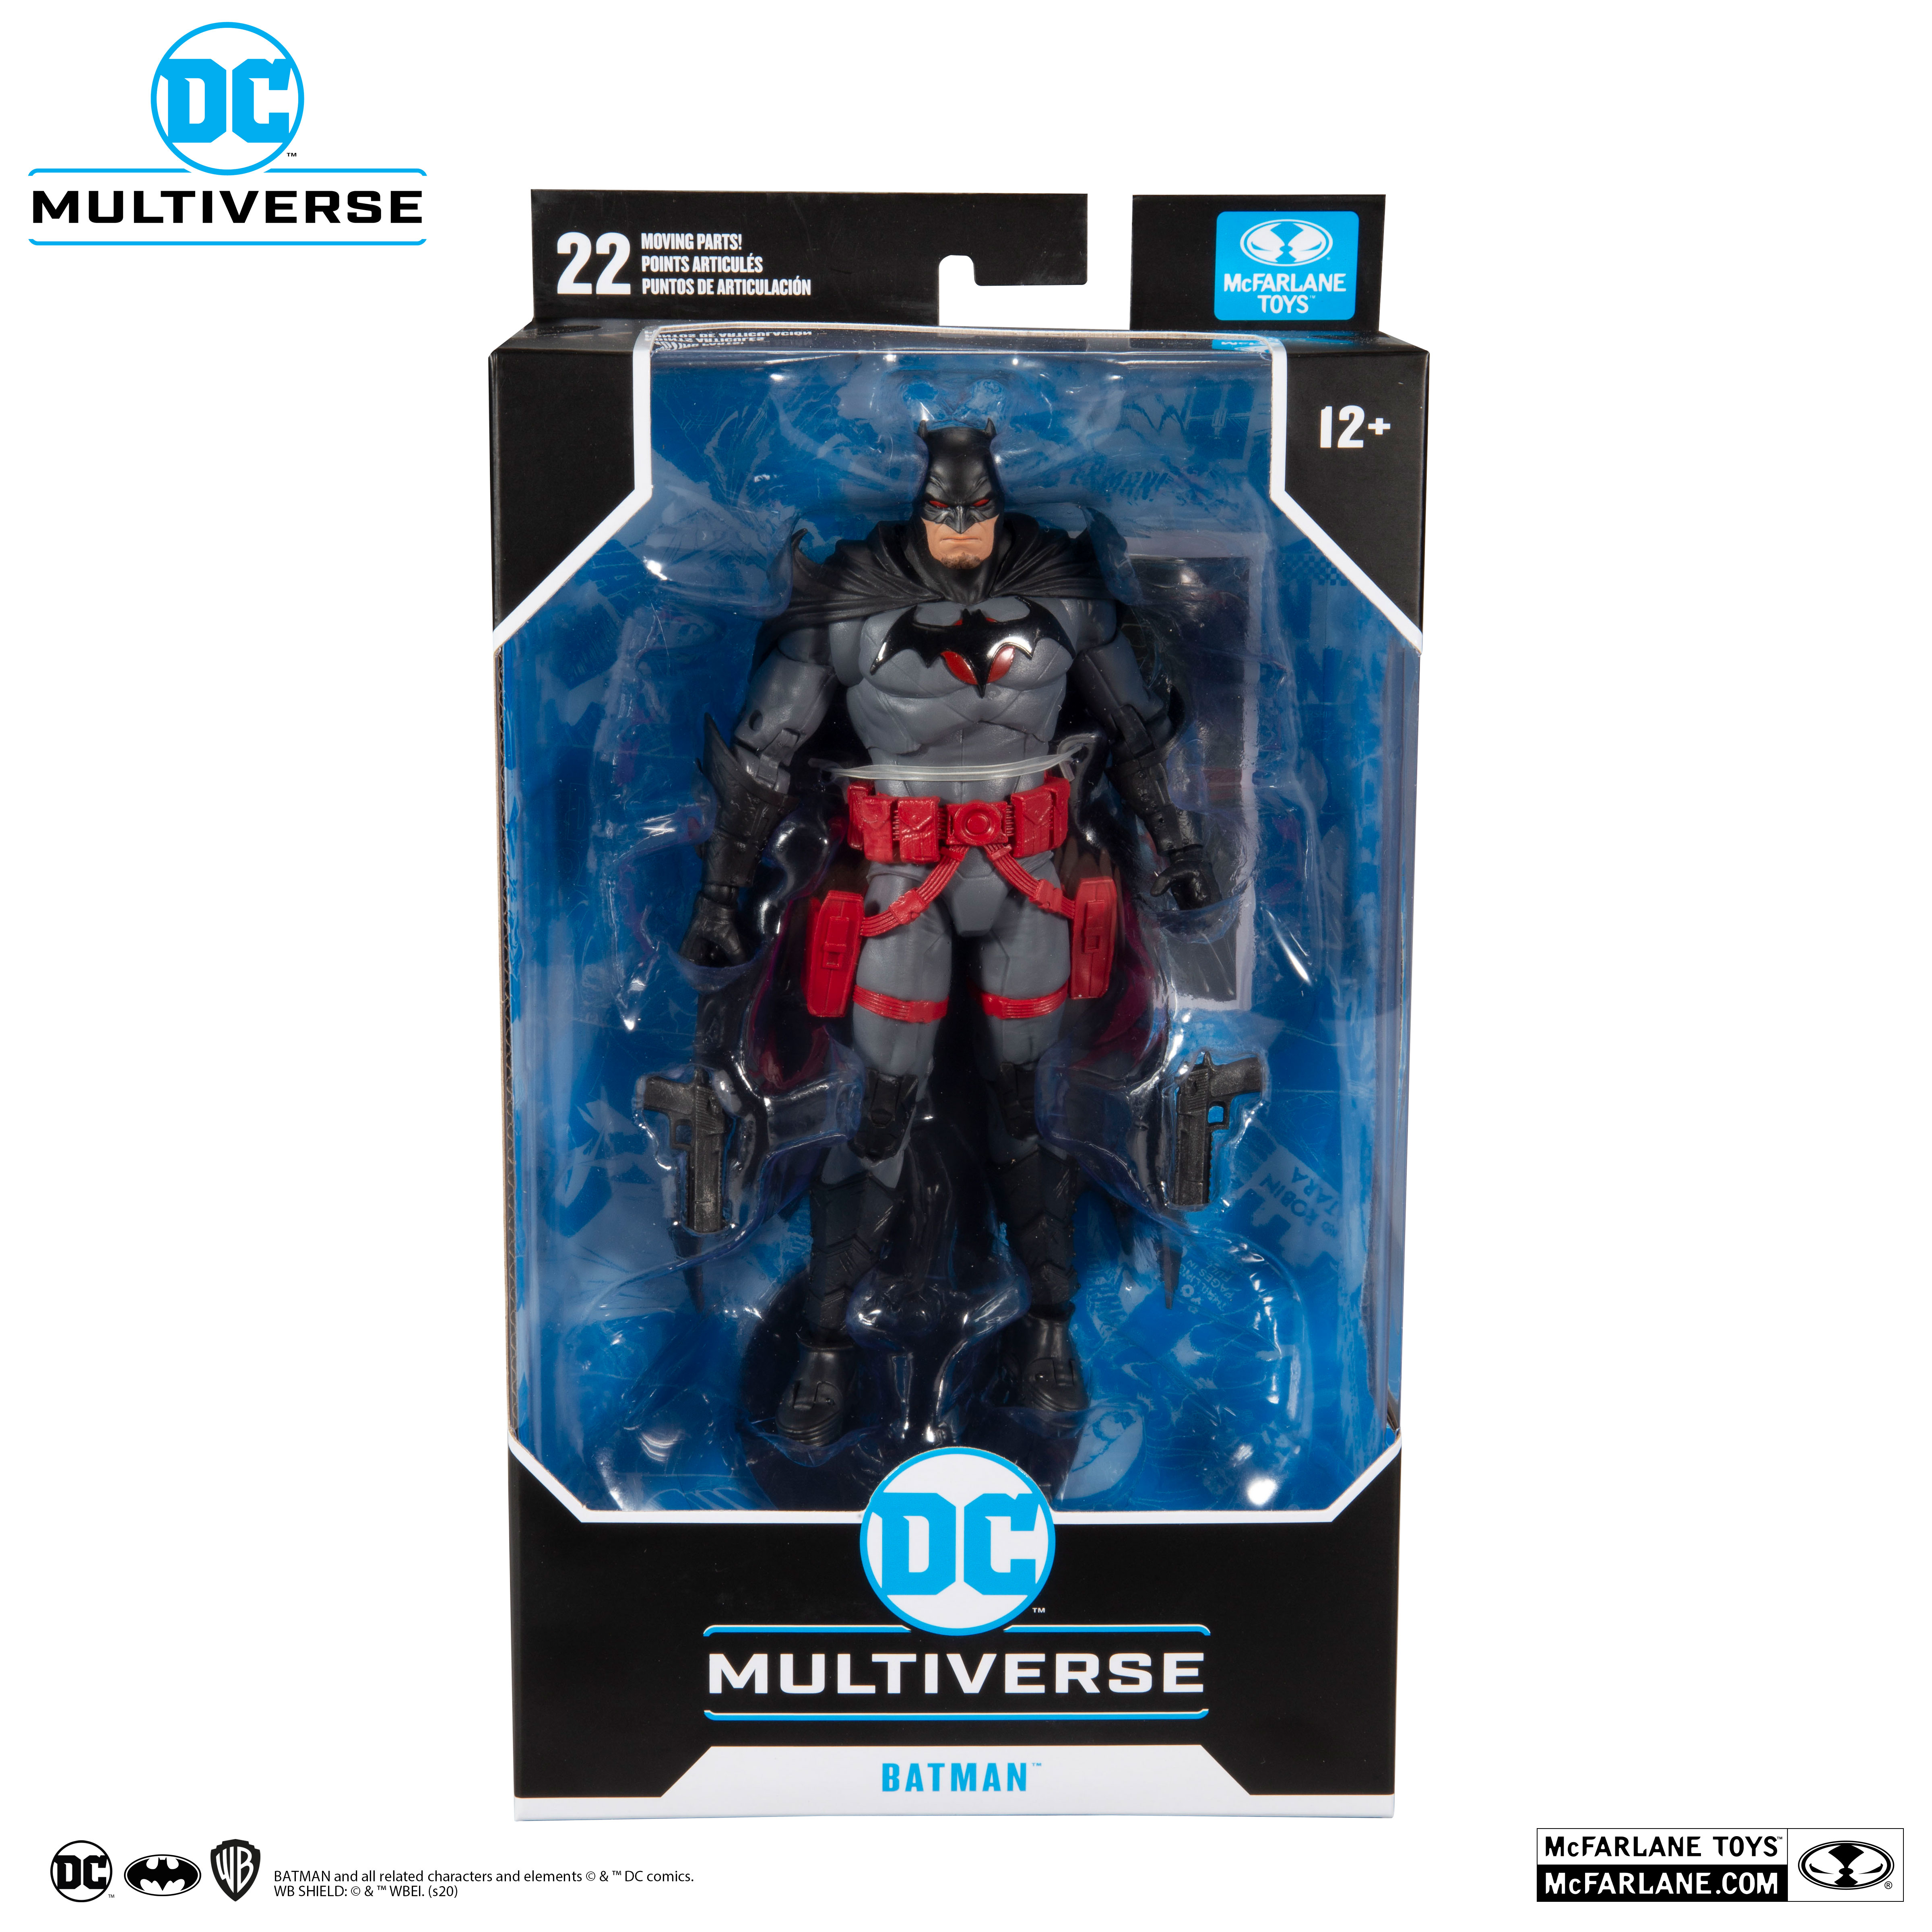 15018 for sale online McFarlane Toys DC Multiverse Thomas Wayne Flashpoint Batman Action Figure 